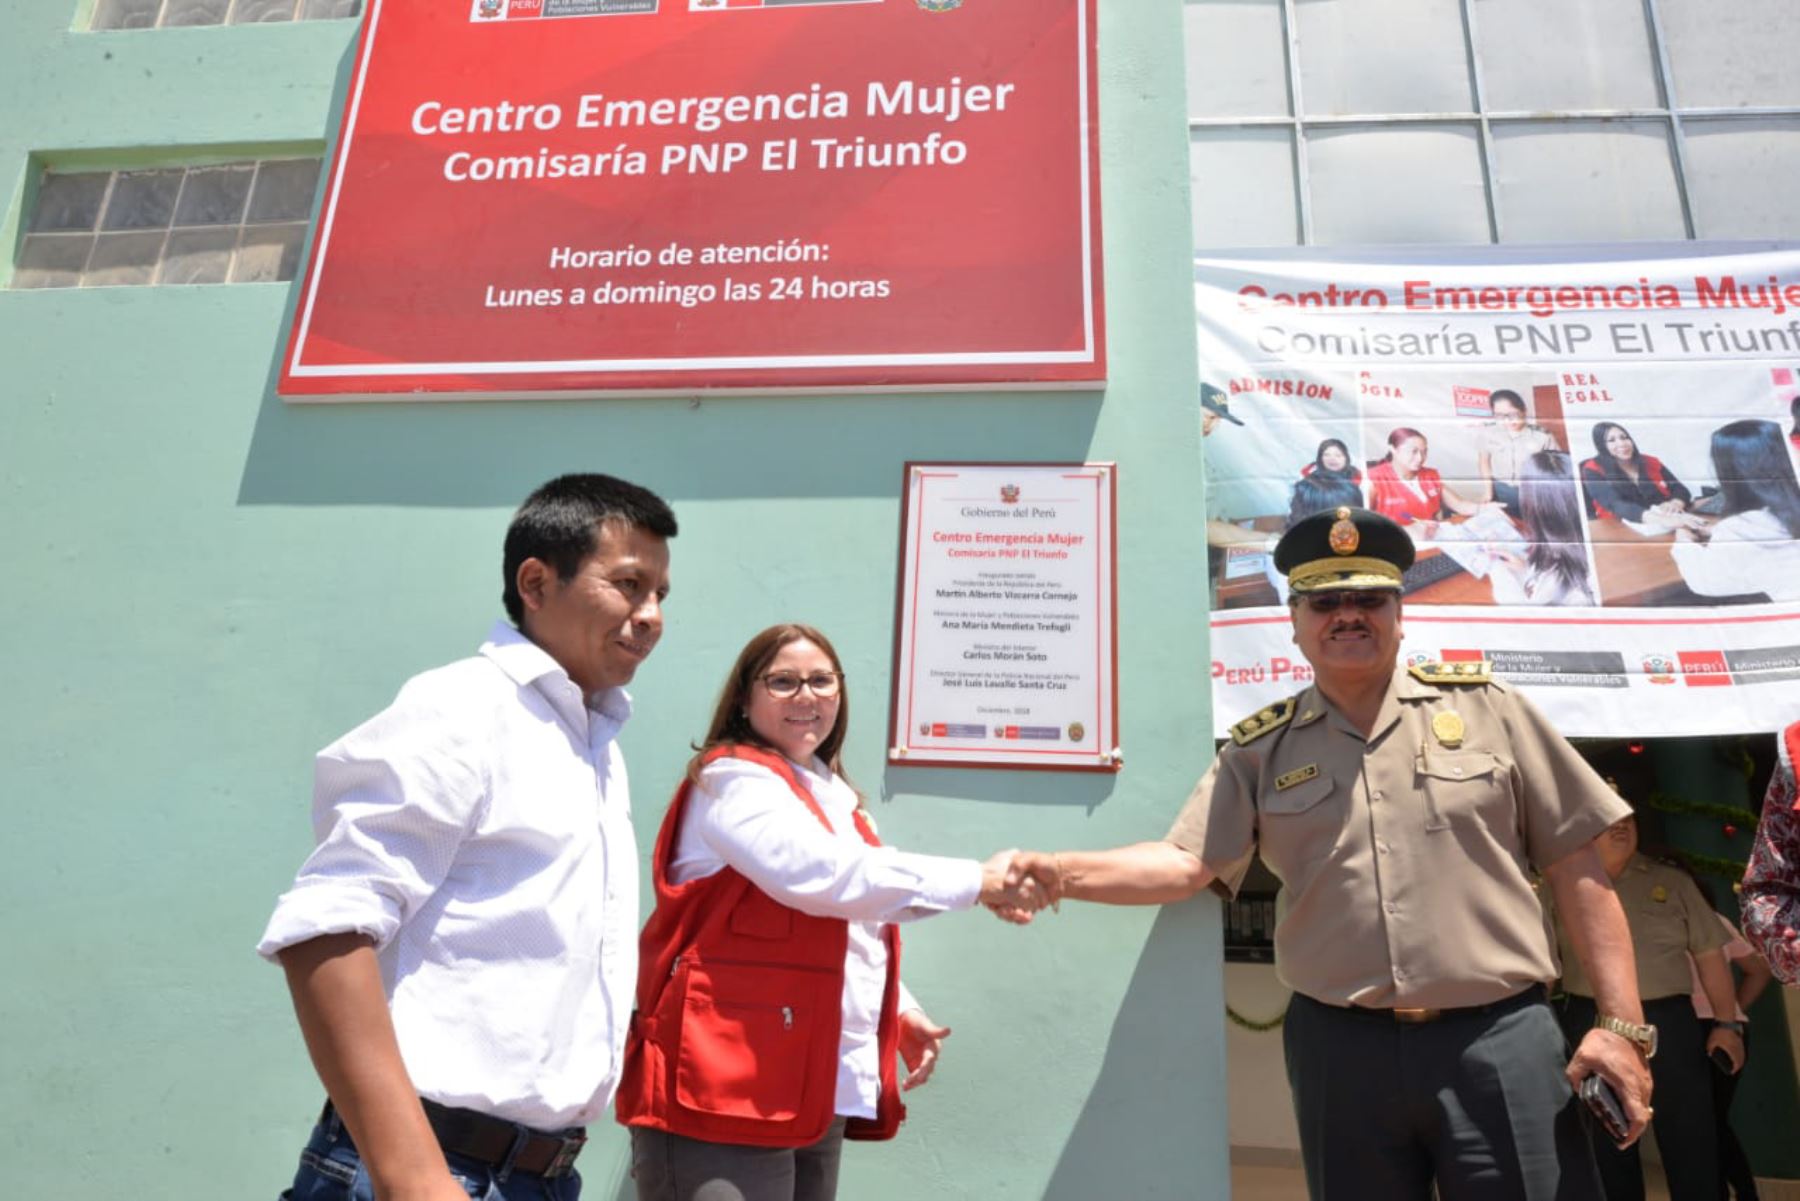 La ministra de la Mujer y Poblaciones Vulnerables, Ana María Mendieta, inauguró el Centro Emergencia Mujer (CEM) en la comisaría El Triunfo, región Arequipa.